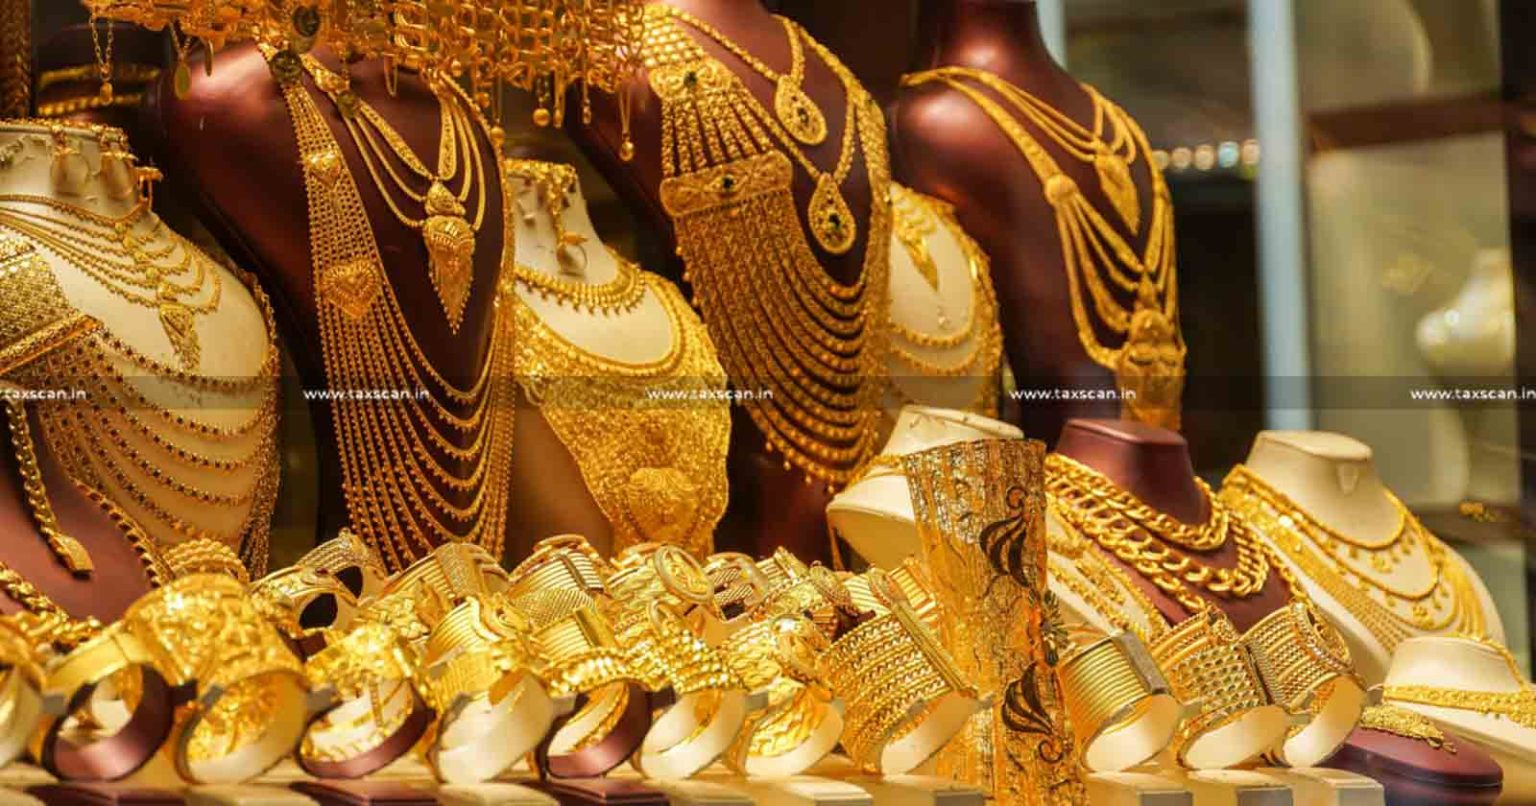 UAE - New Regulations - Regulations - New Regulations for Carrying Gold - Carrying Gold - Gold - Carrying Gold in Hand Luggage - Gold in Hand Luggage - taxscan